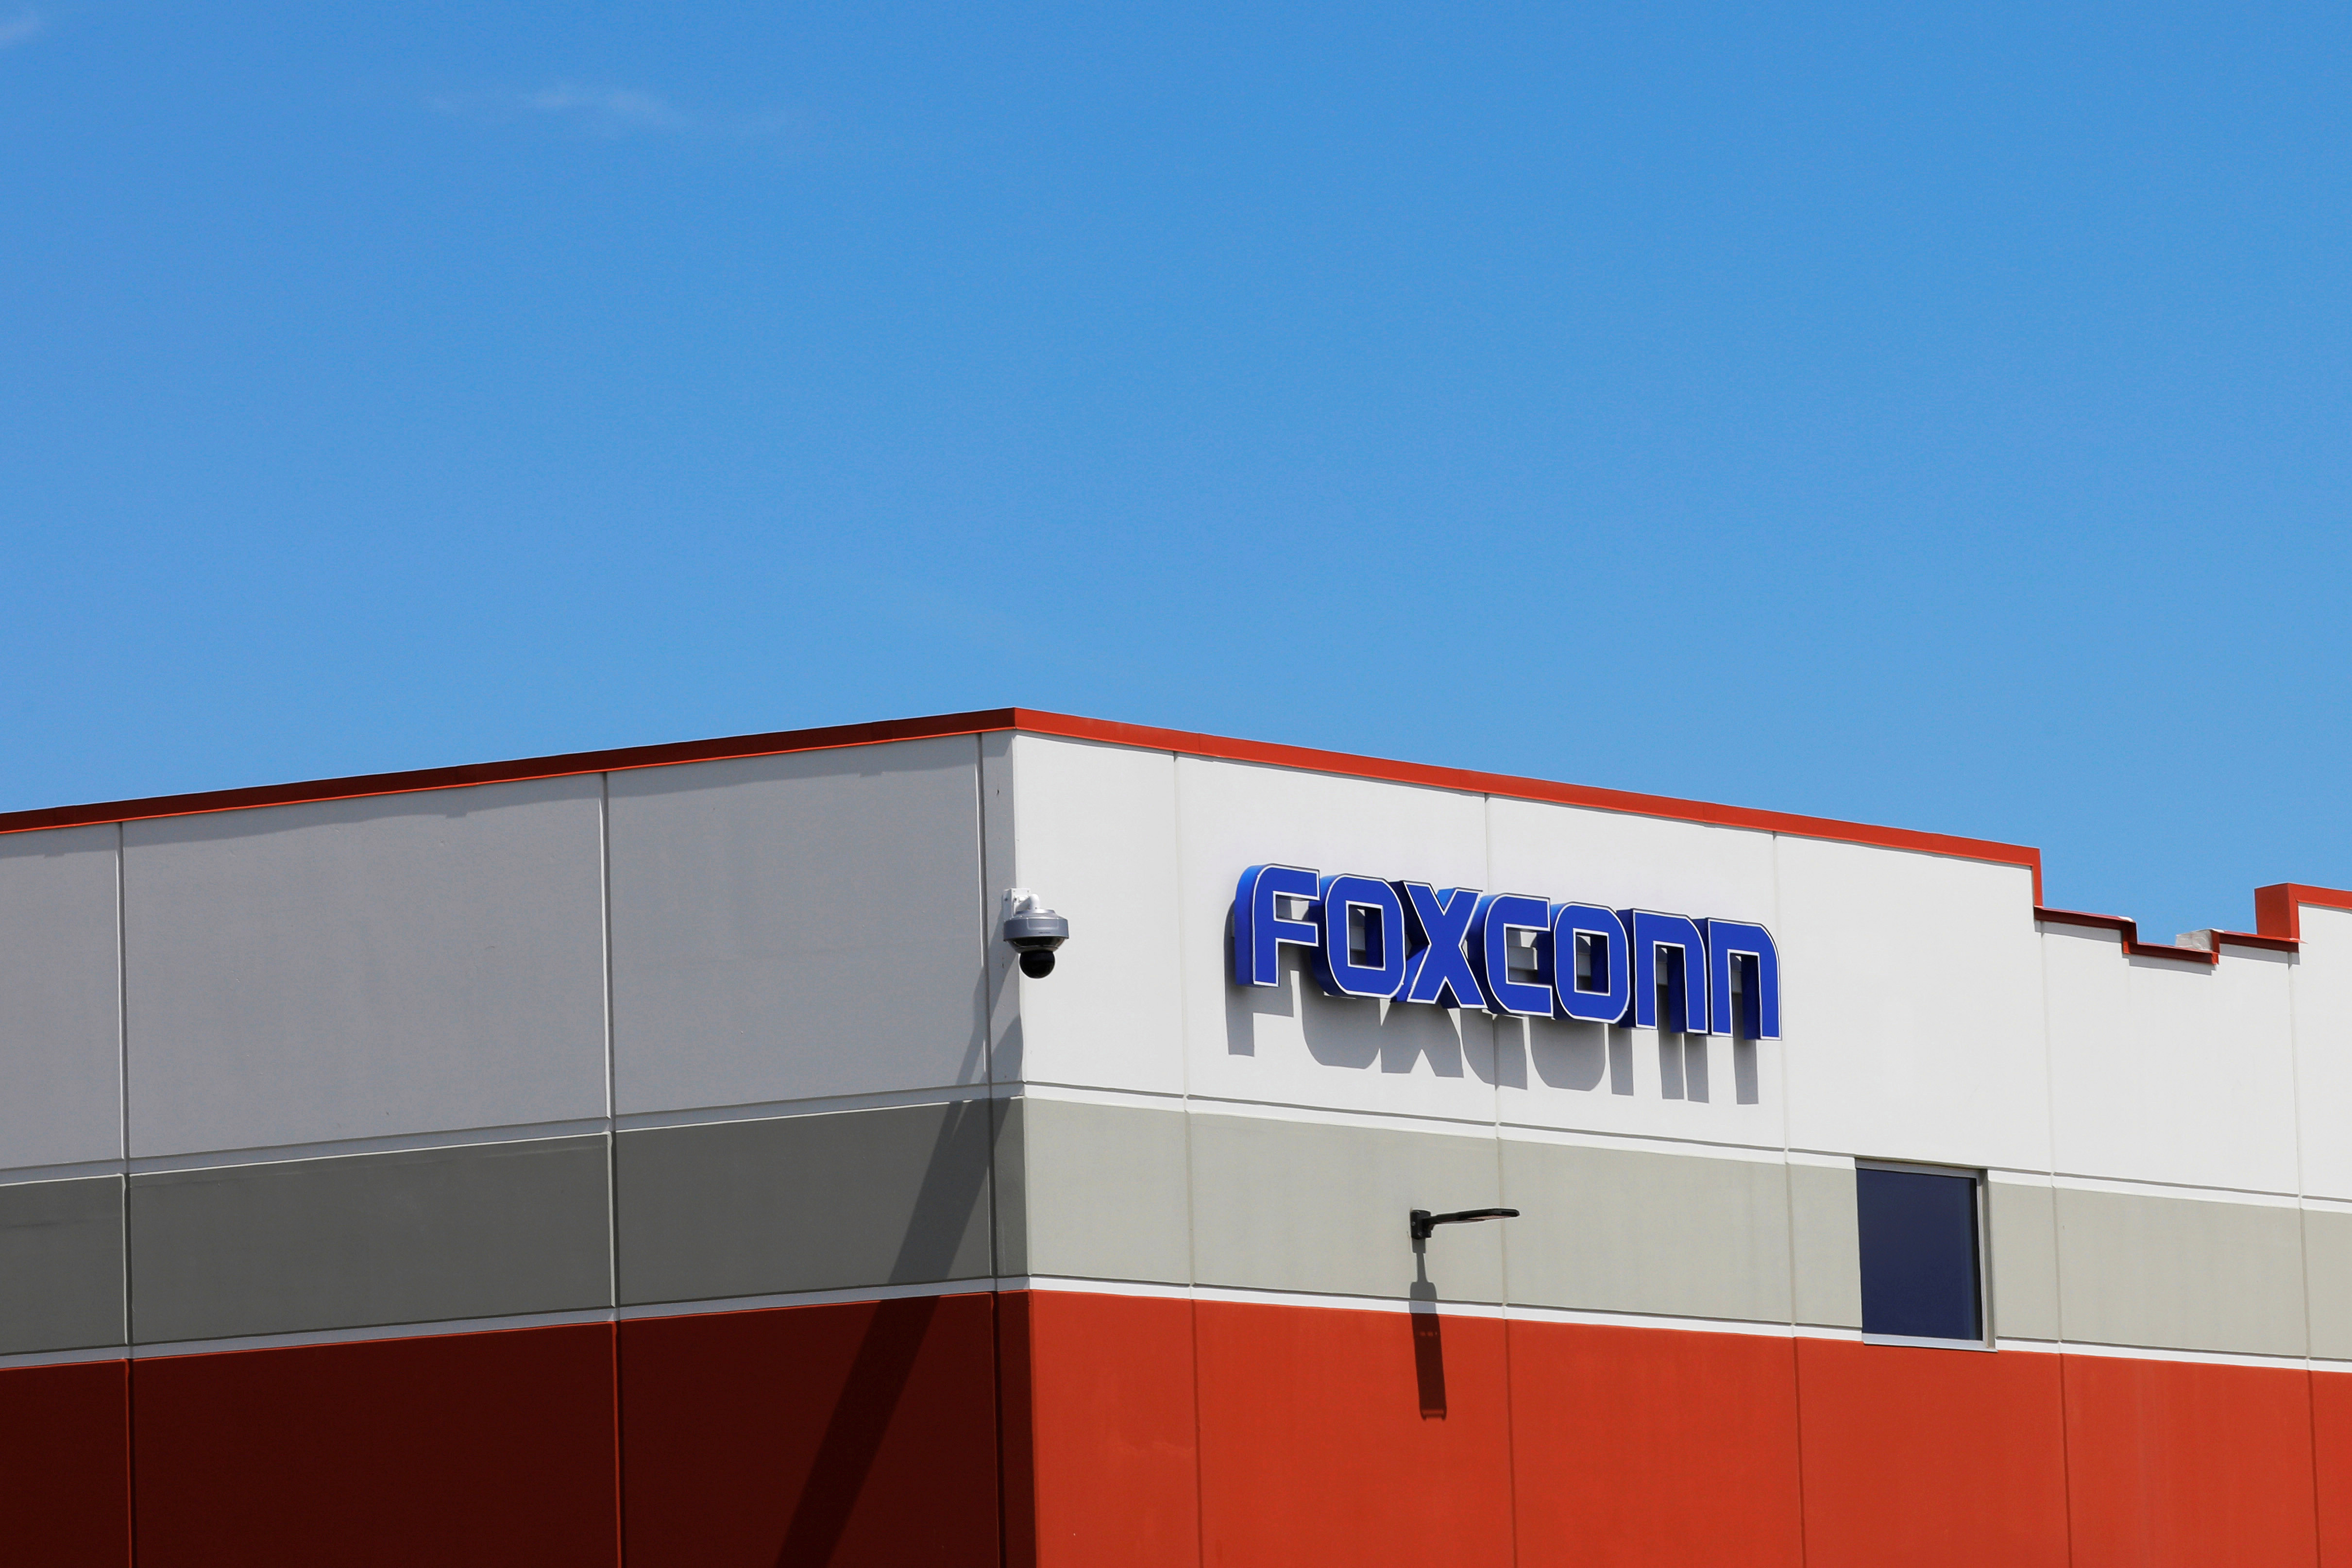   Foxconn сказал, что он будет гарантировать, что он не нарушает законы о труде - в то время как Amazon сказал, что начал расследование